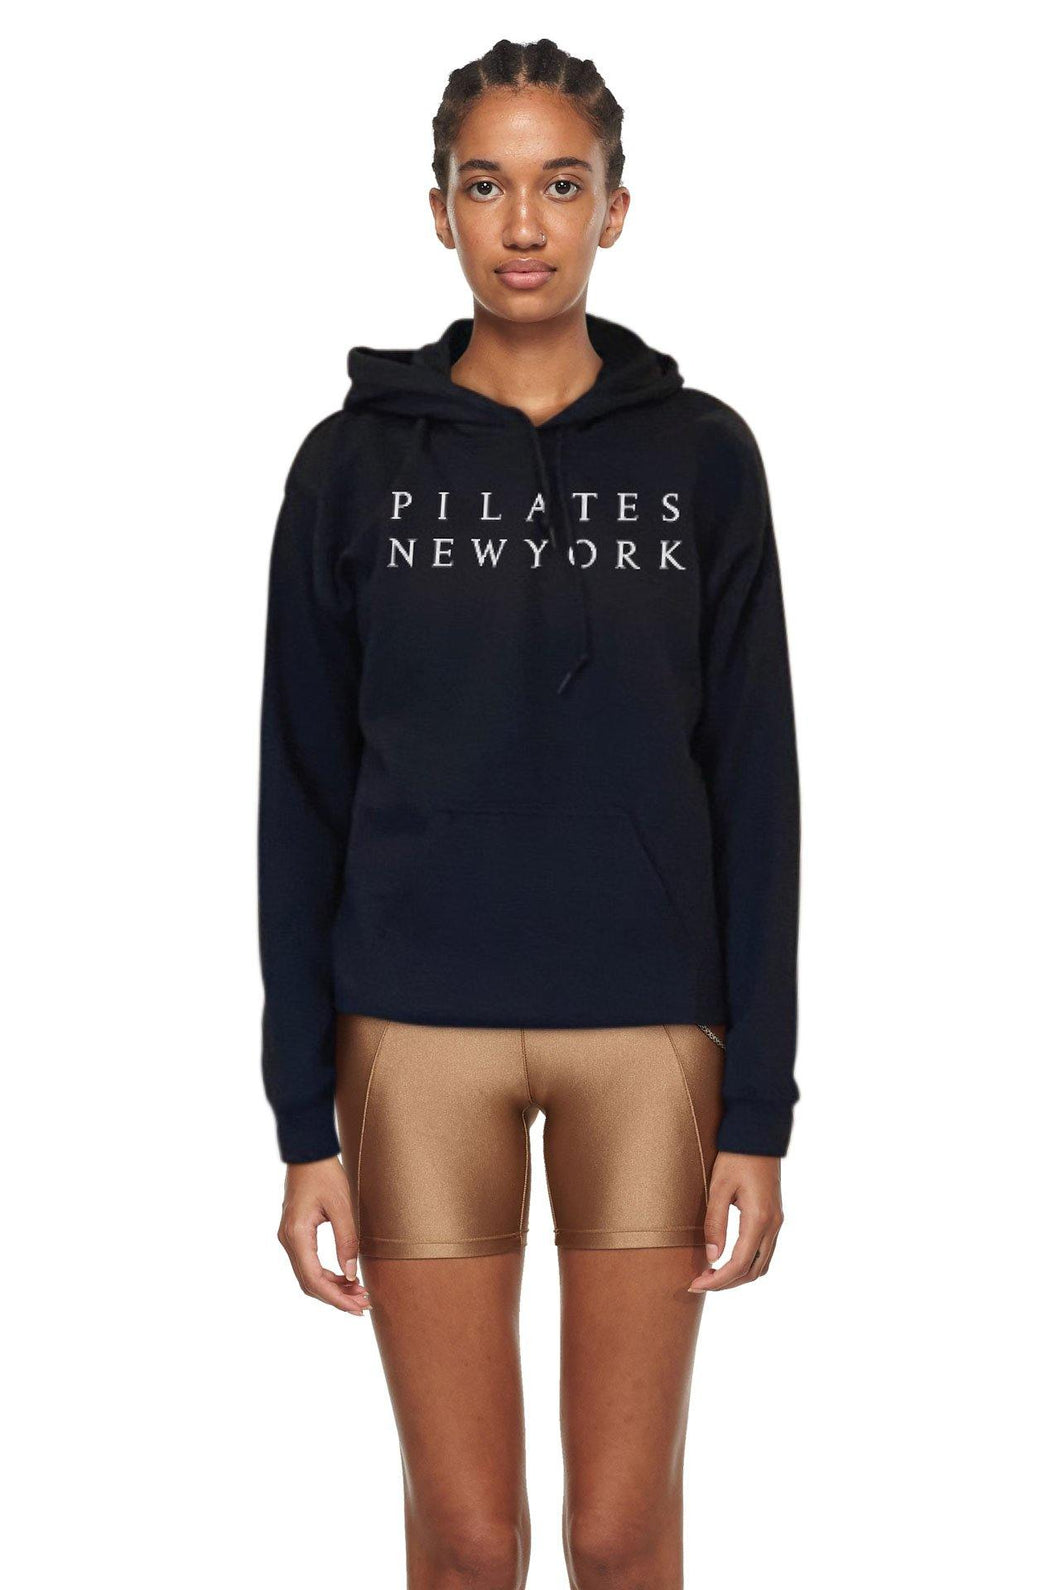 Pilates New York Sweatshirt - New York Pilates